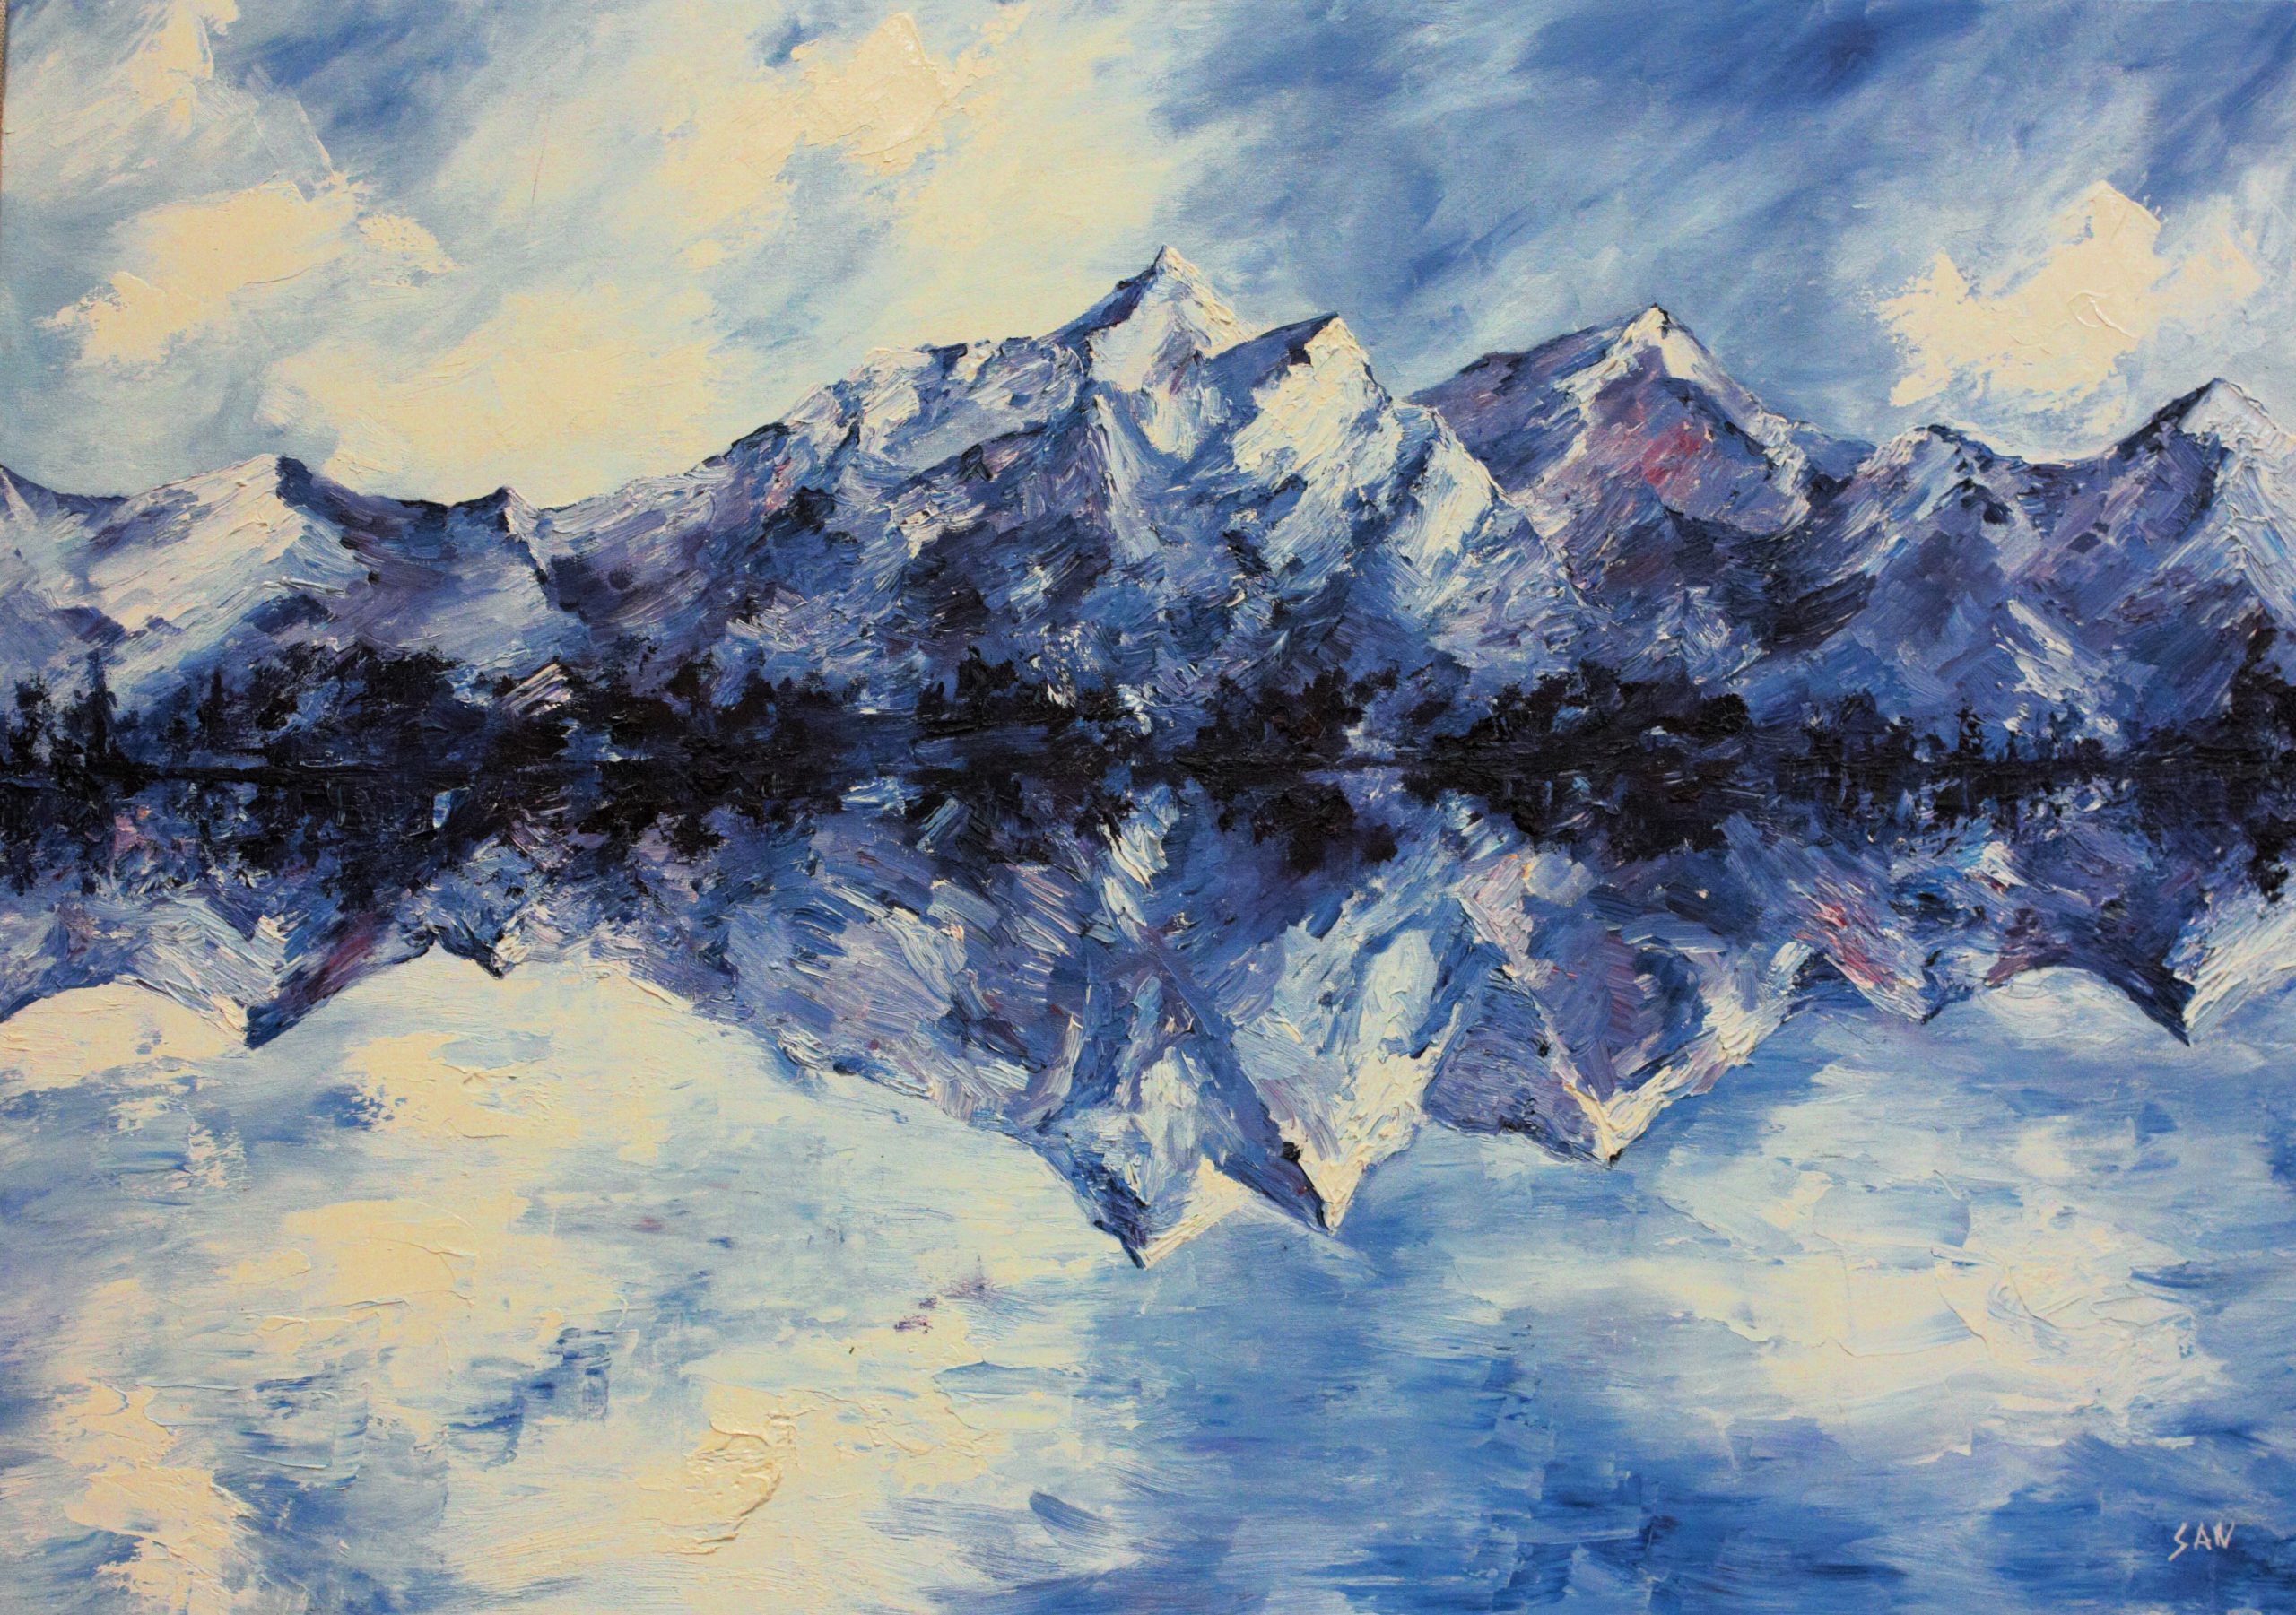 Cuadro en óleo que muestra la simplificación y el reflejo de montañas en Alaska sobre un lago helado